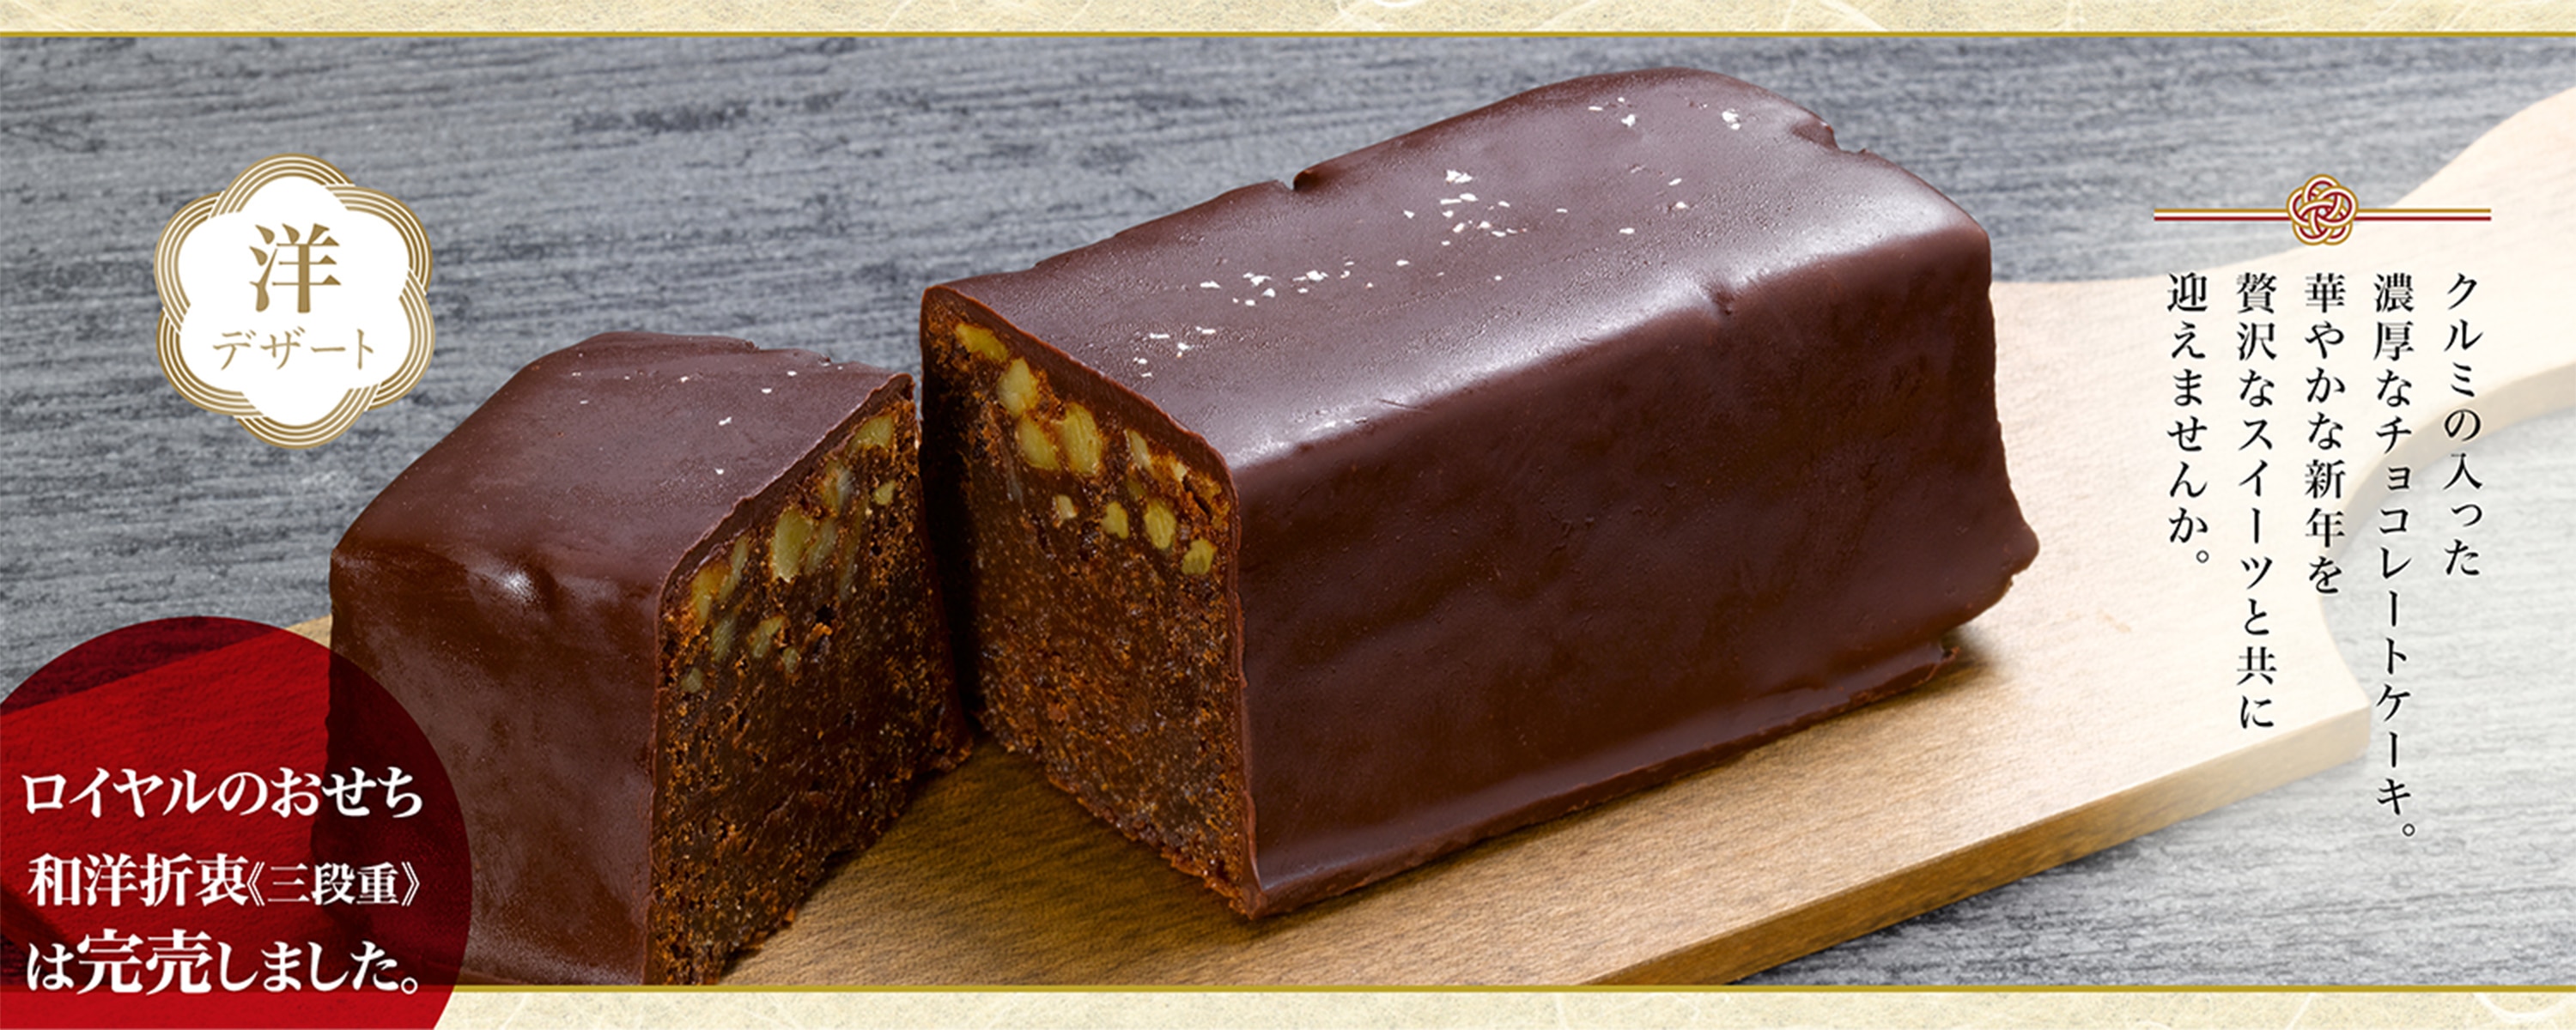 クルミの入った濃厚なチョコレートケーキ華やかな新年を贅沢なスイーツと共に迎えませんか